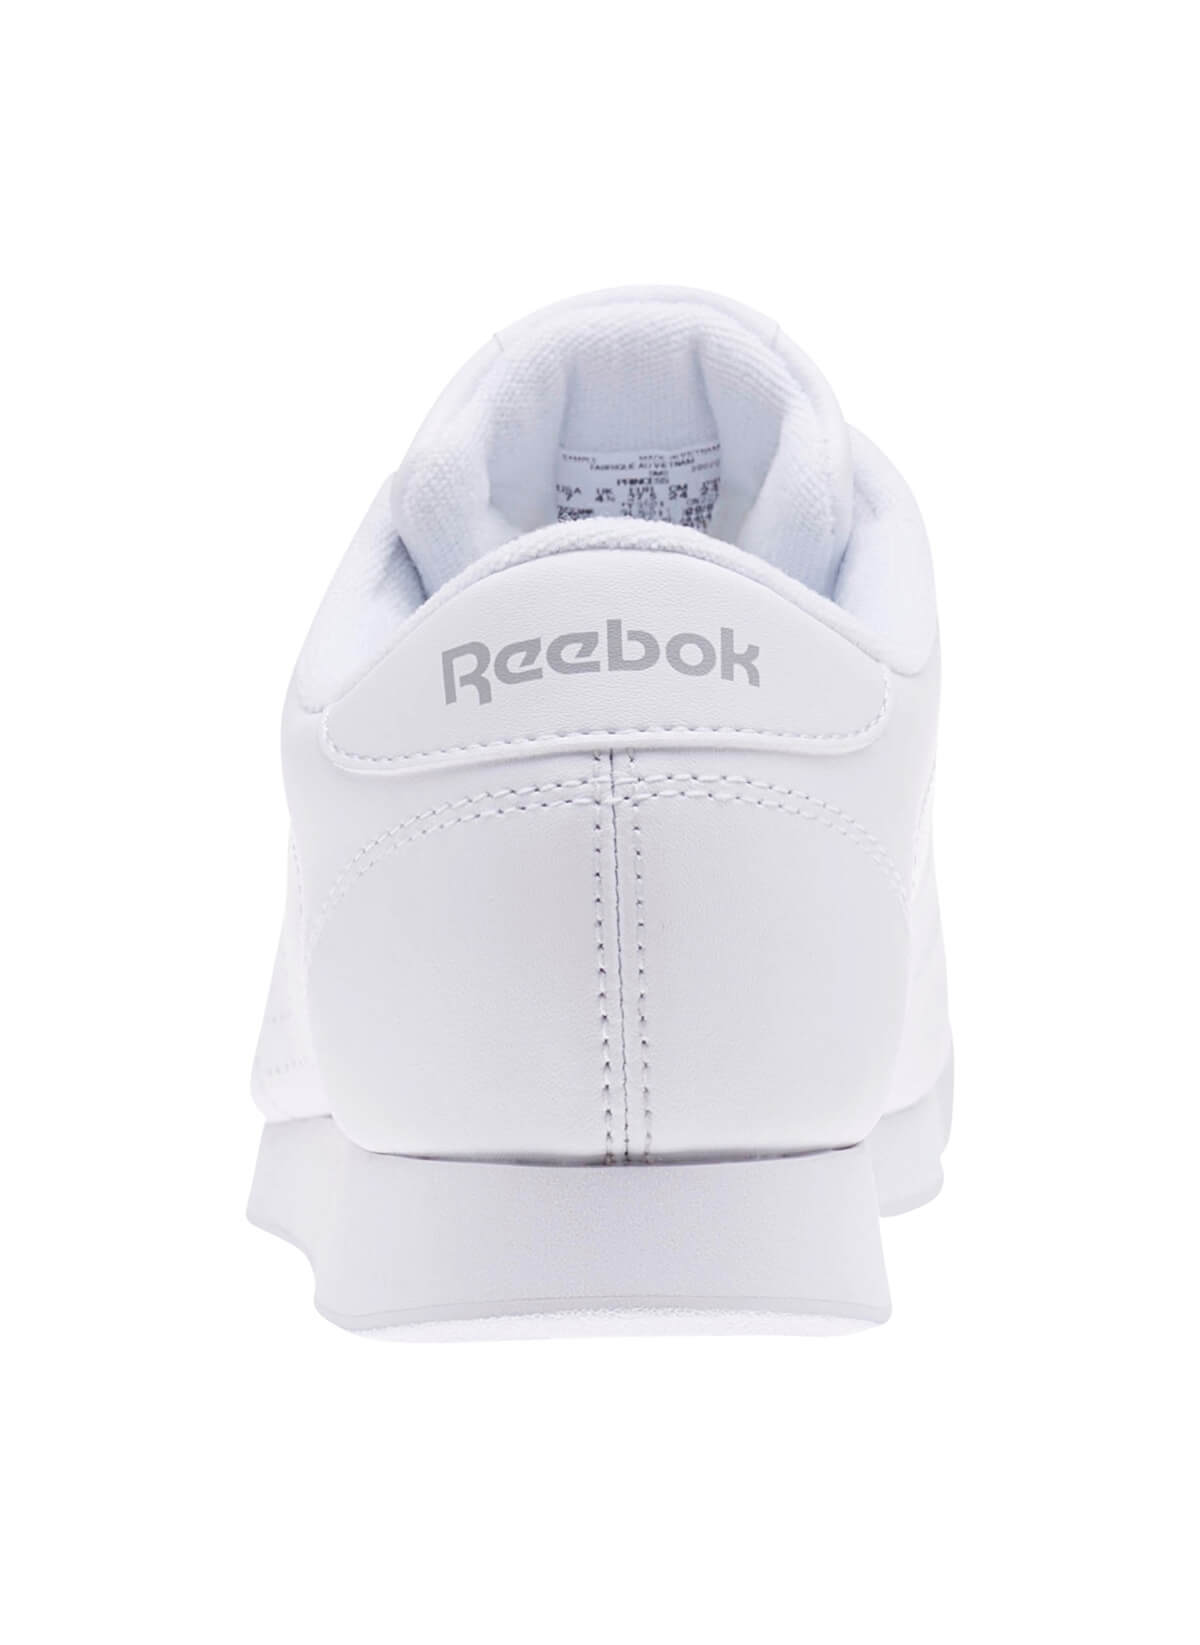 Reebok CN2212 PRINCESS Kadın Lifestyle Ayakkabı